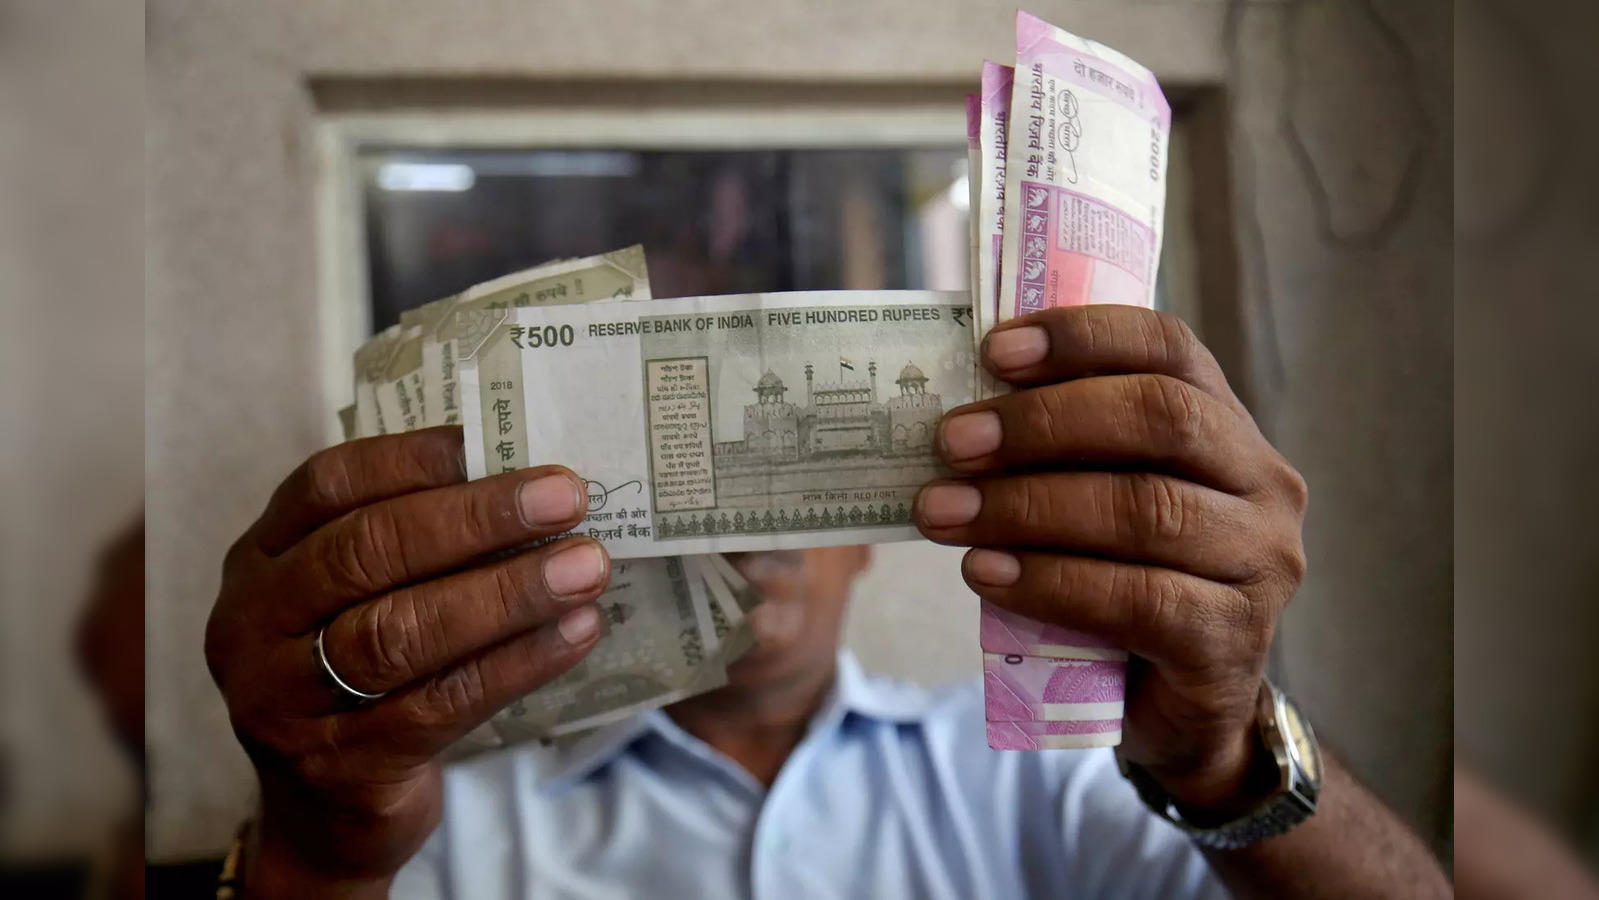 Convert 50 Australian Dollar in Pakistani Rupee today - AUD to PKR